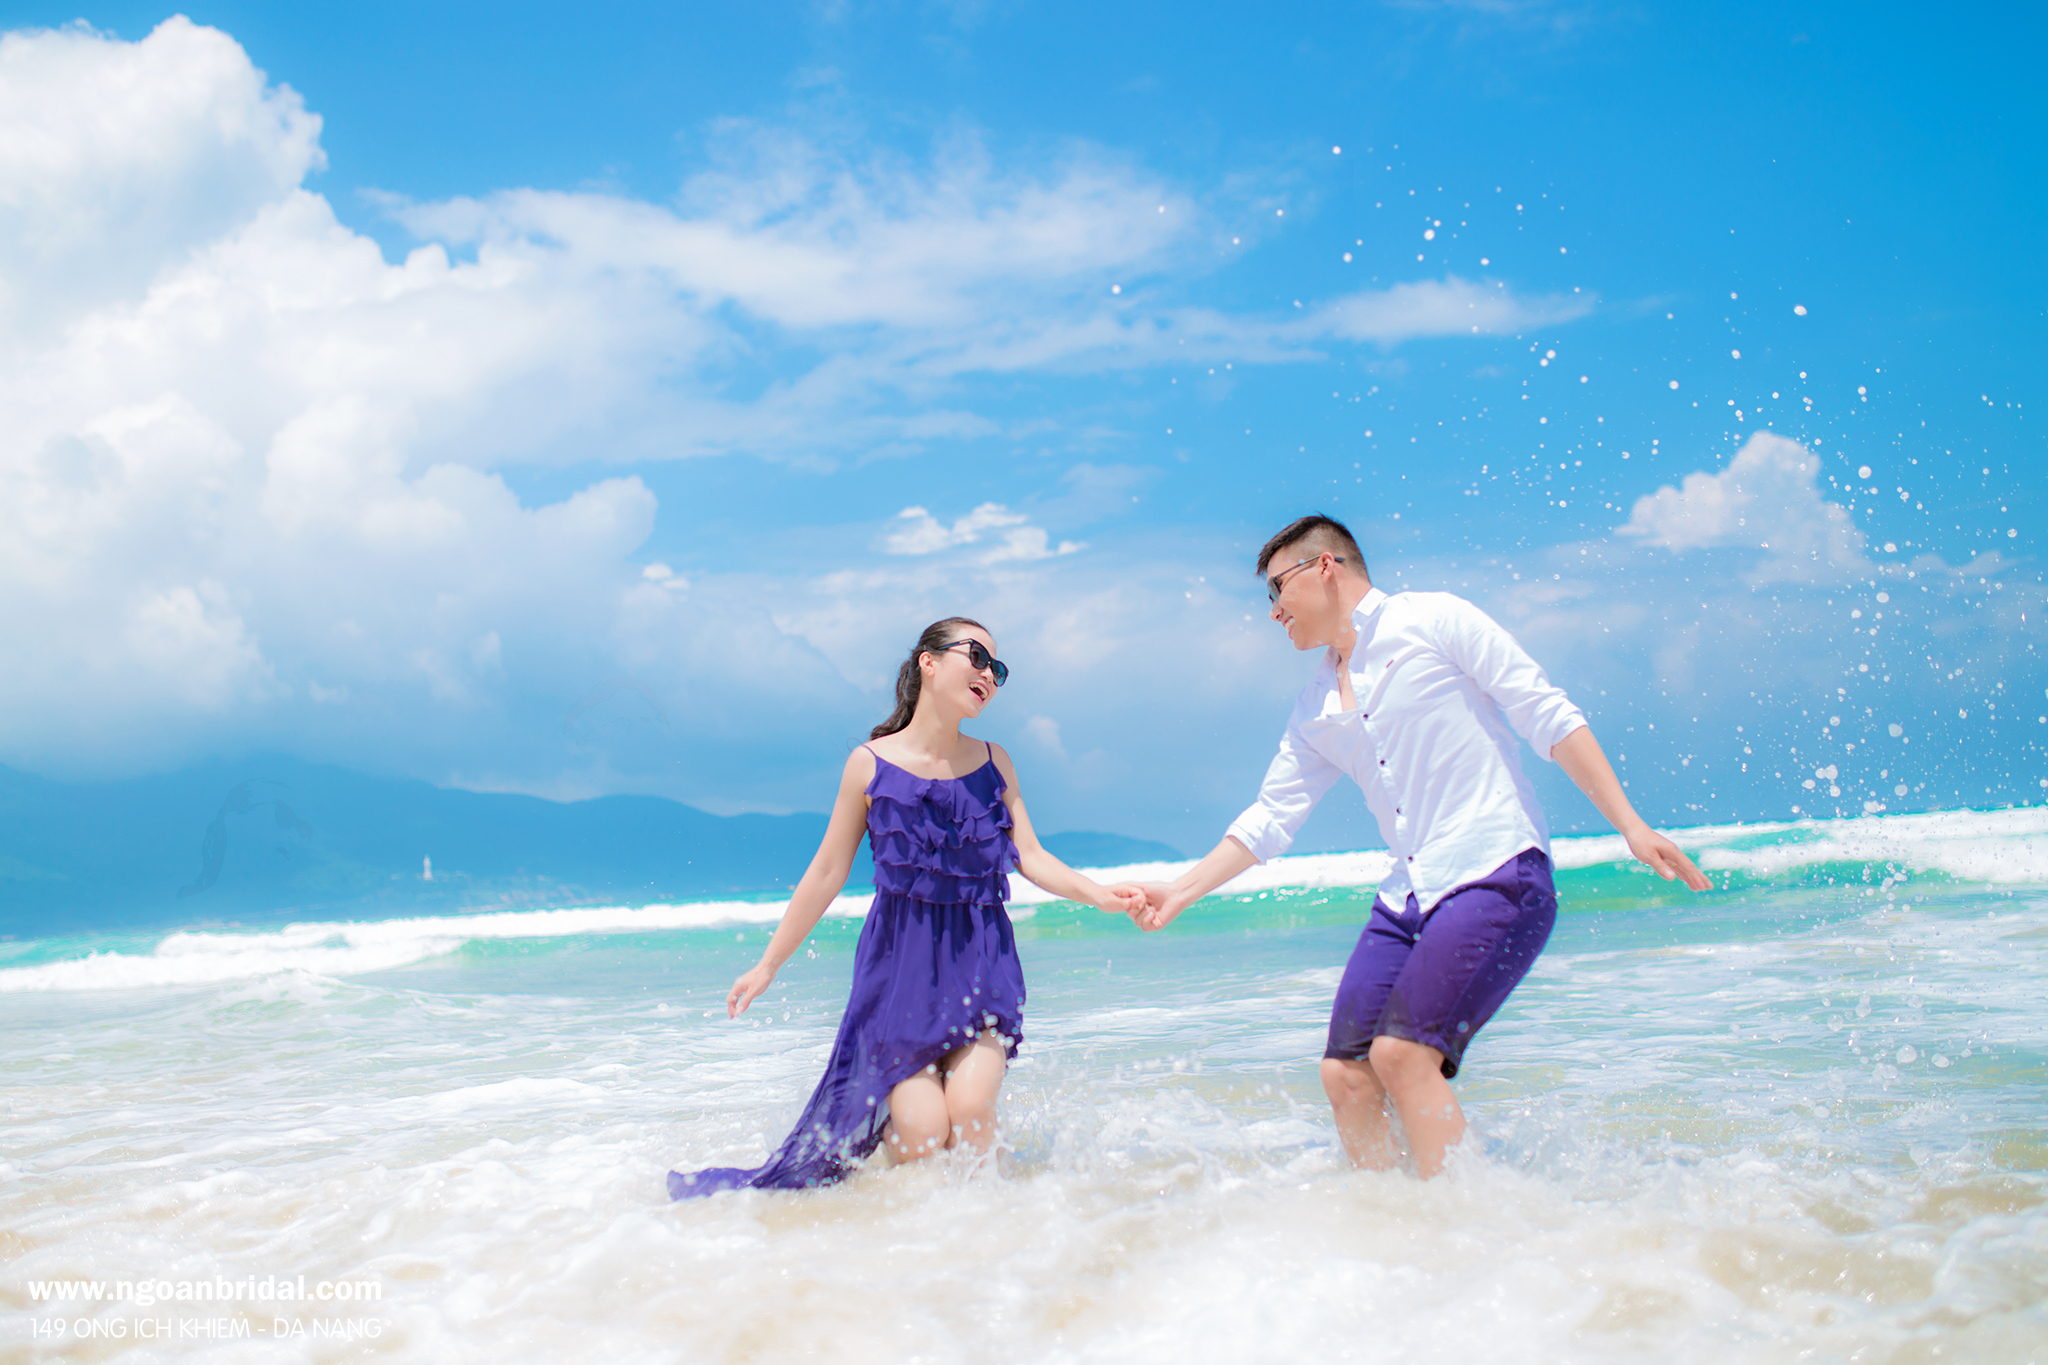 Các cặp đôi đang tìm kiếm bộ ảnh cưới thật đáng nhớ trên bãi biển? Hãy lựa chọn những chiếc váy cặp đôi xinh xắn để có những khoảnh khắc đầy lãng mạn và ấn tượng.